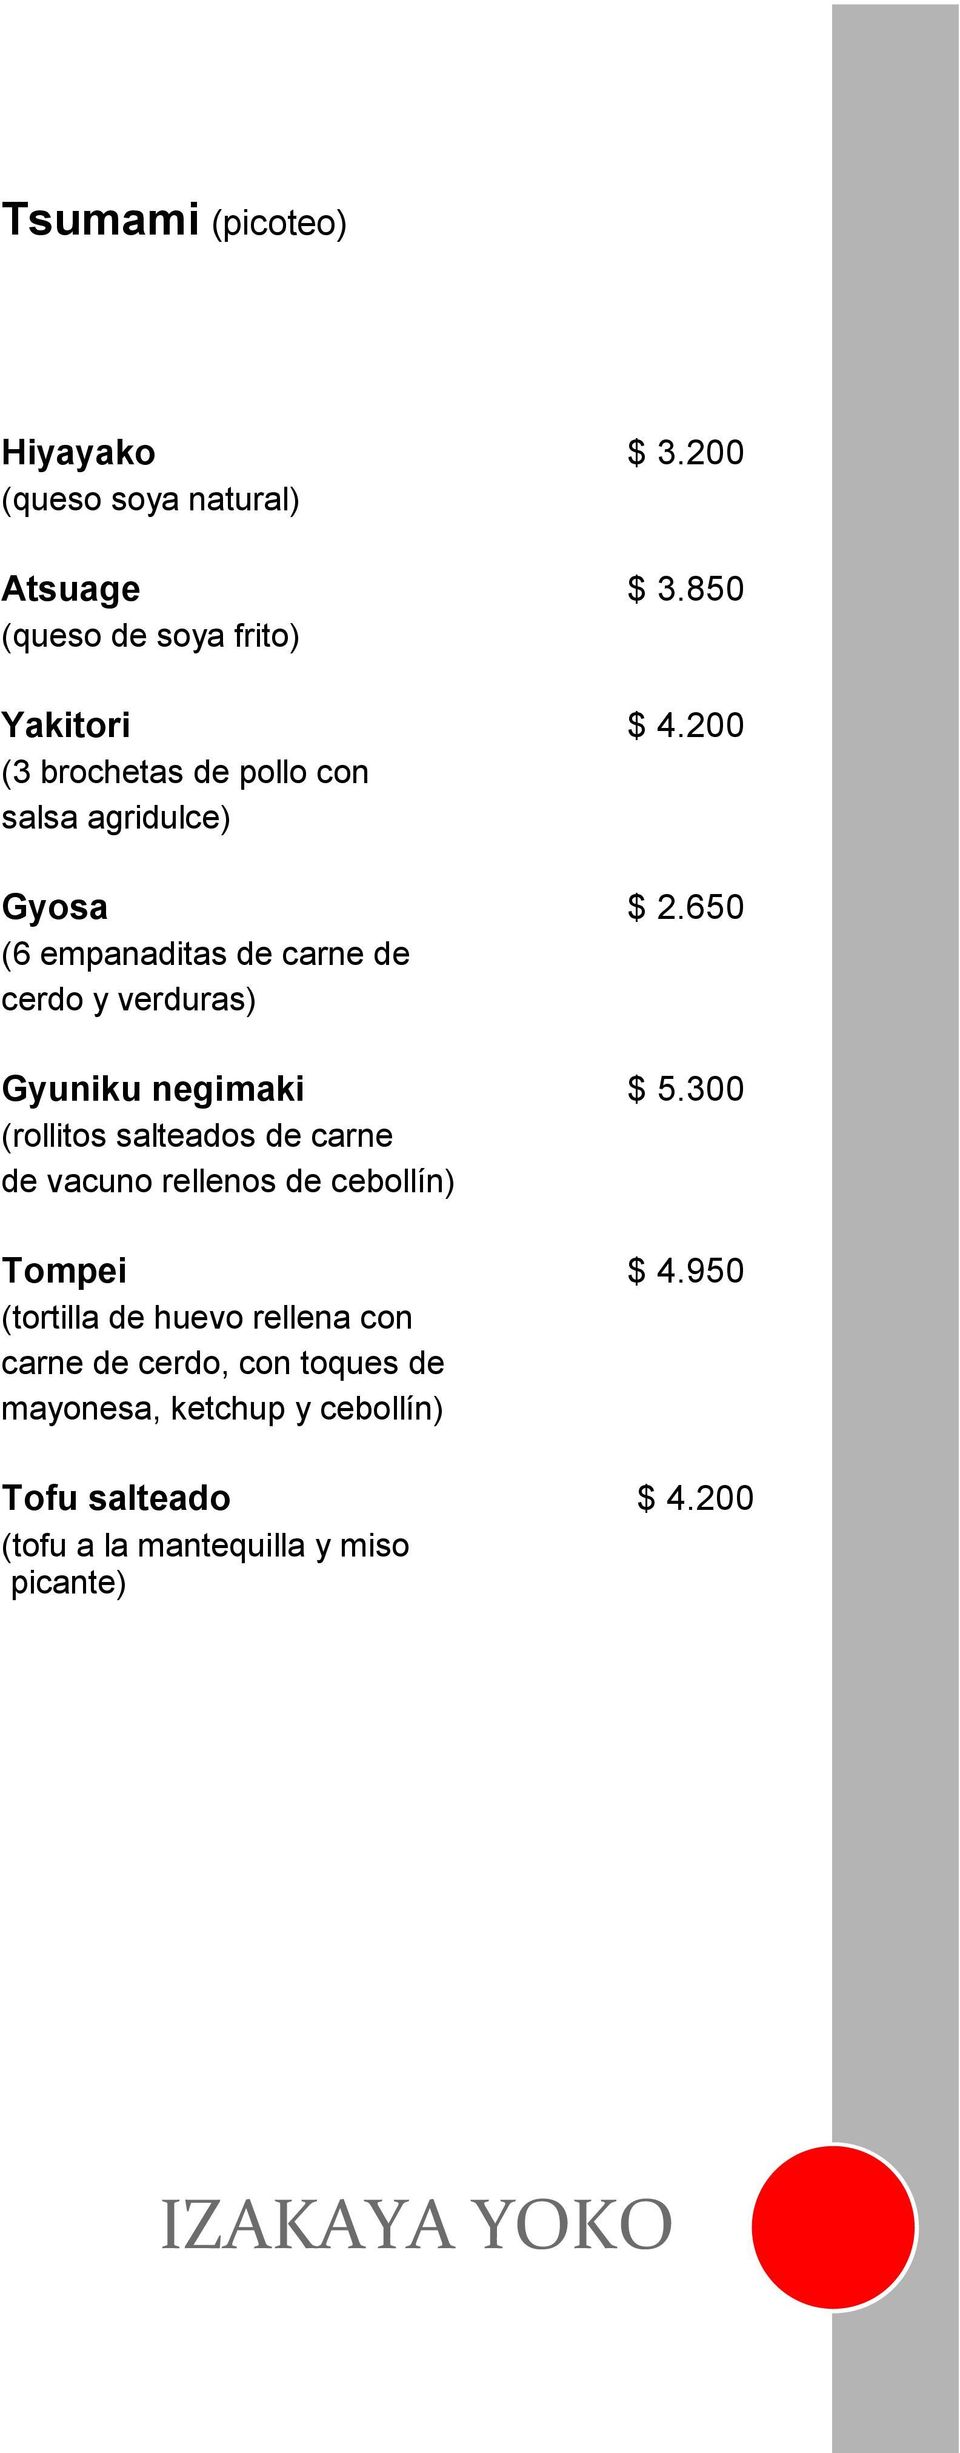 650 (6 empanaditas de carne de cerdo y verduras) Gyuniku negimaki $ 5.